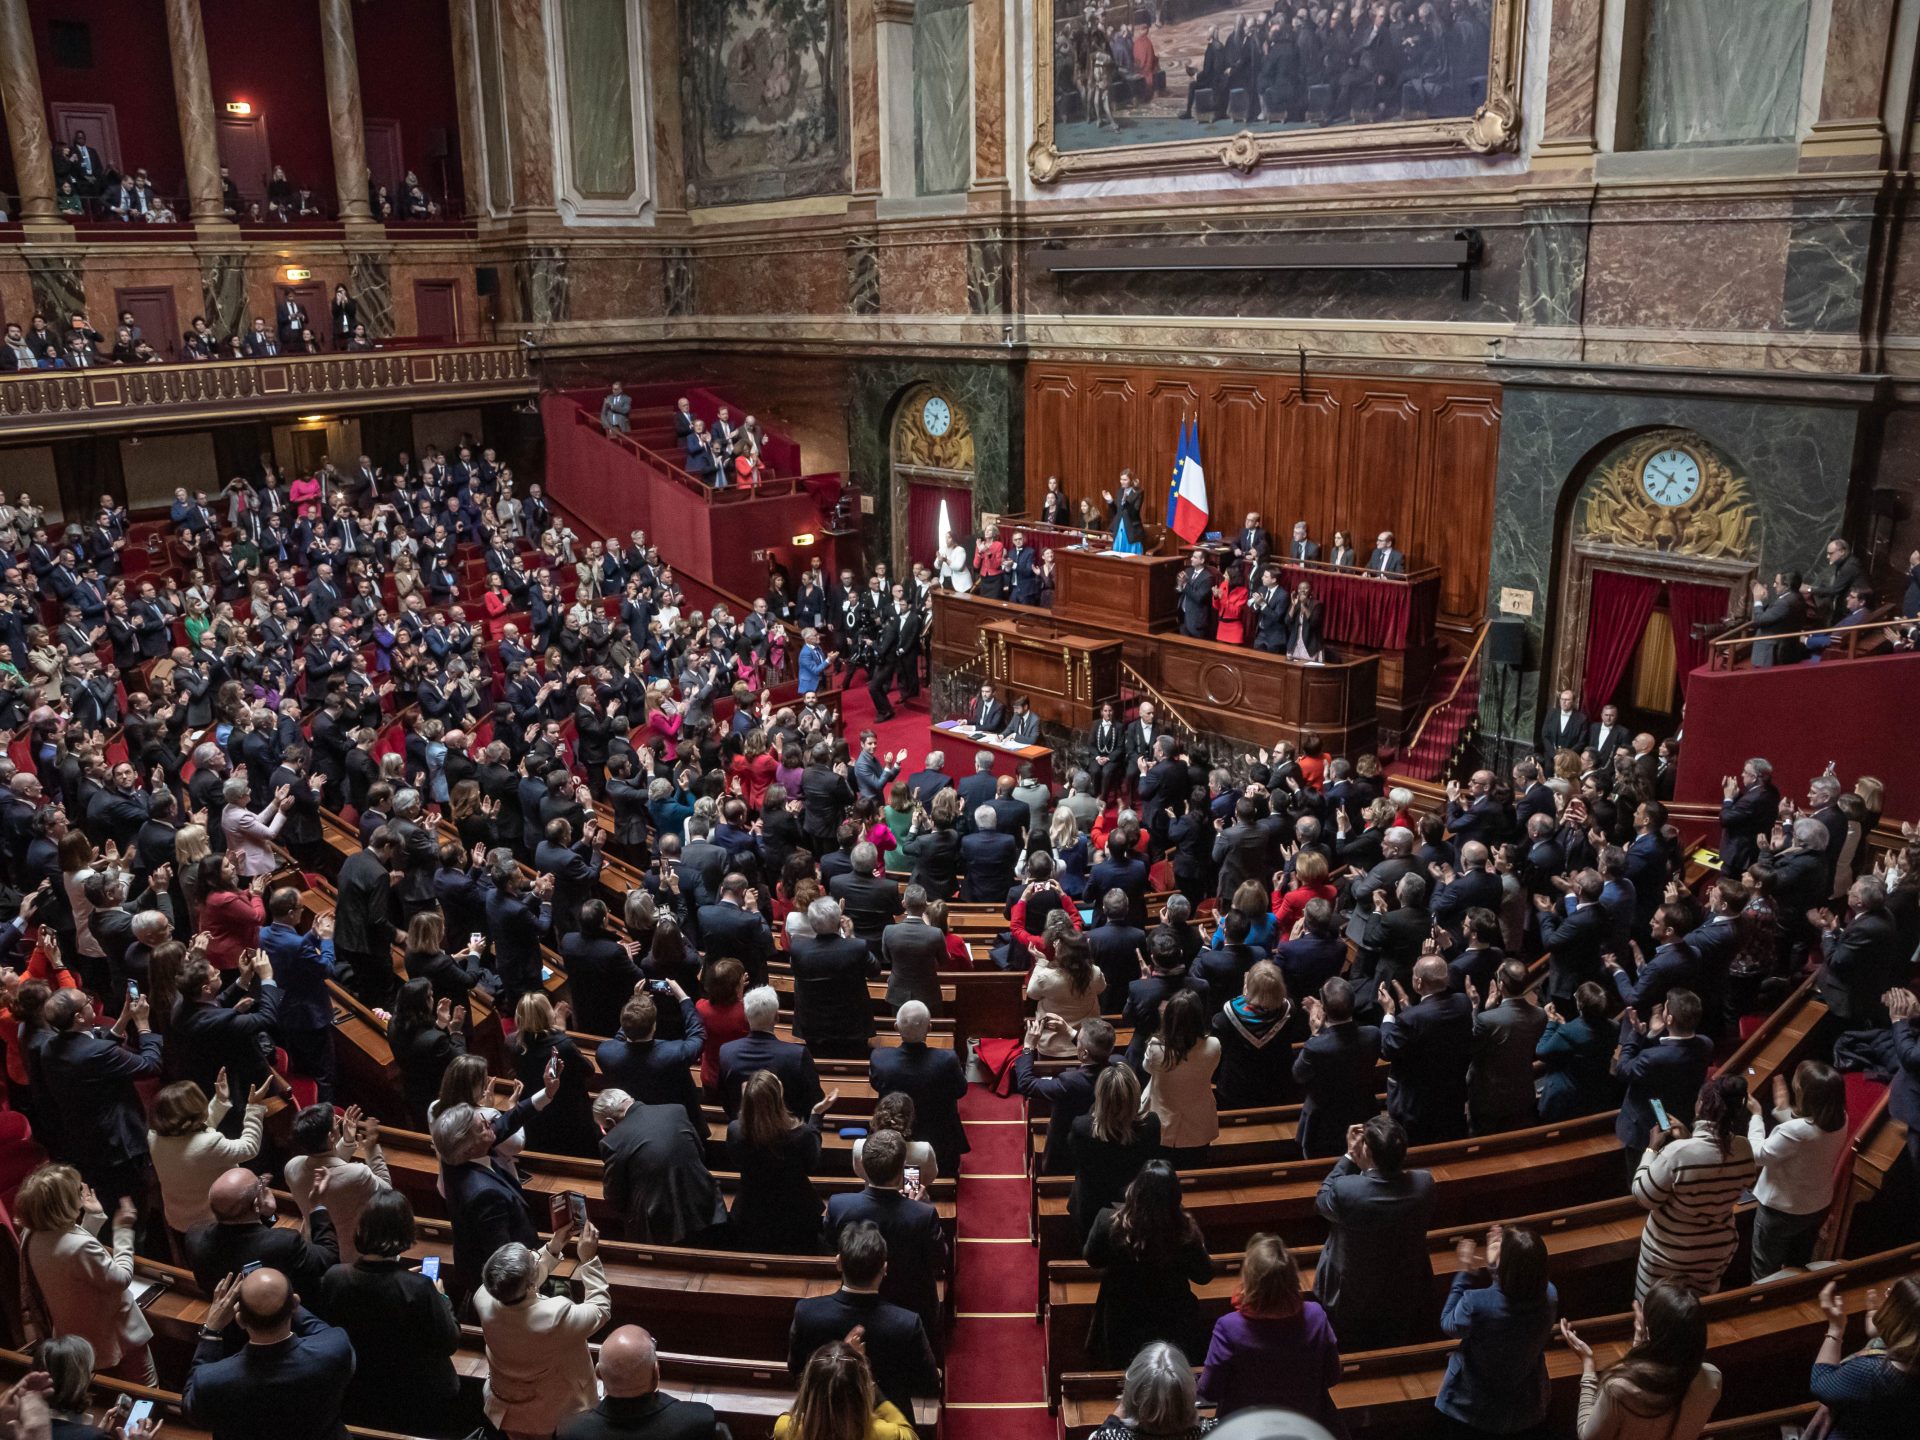 البرلمان الفرنسي يندد بـ”القمع الدامي” لجزائريين قبل 63 عاما | أخبار – البوكس نيوز